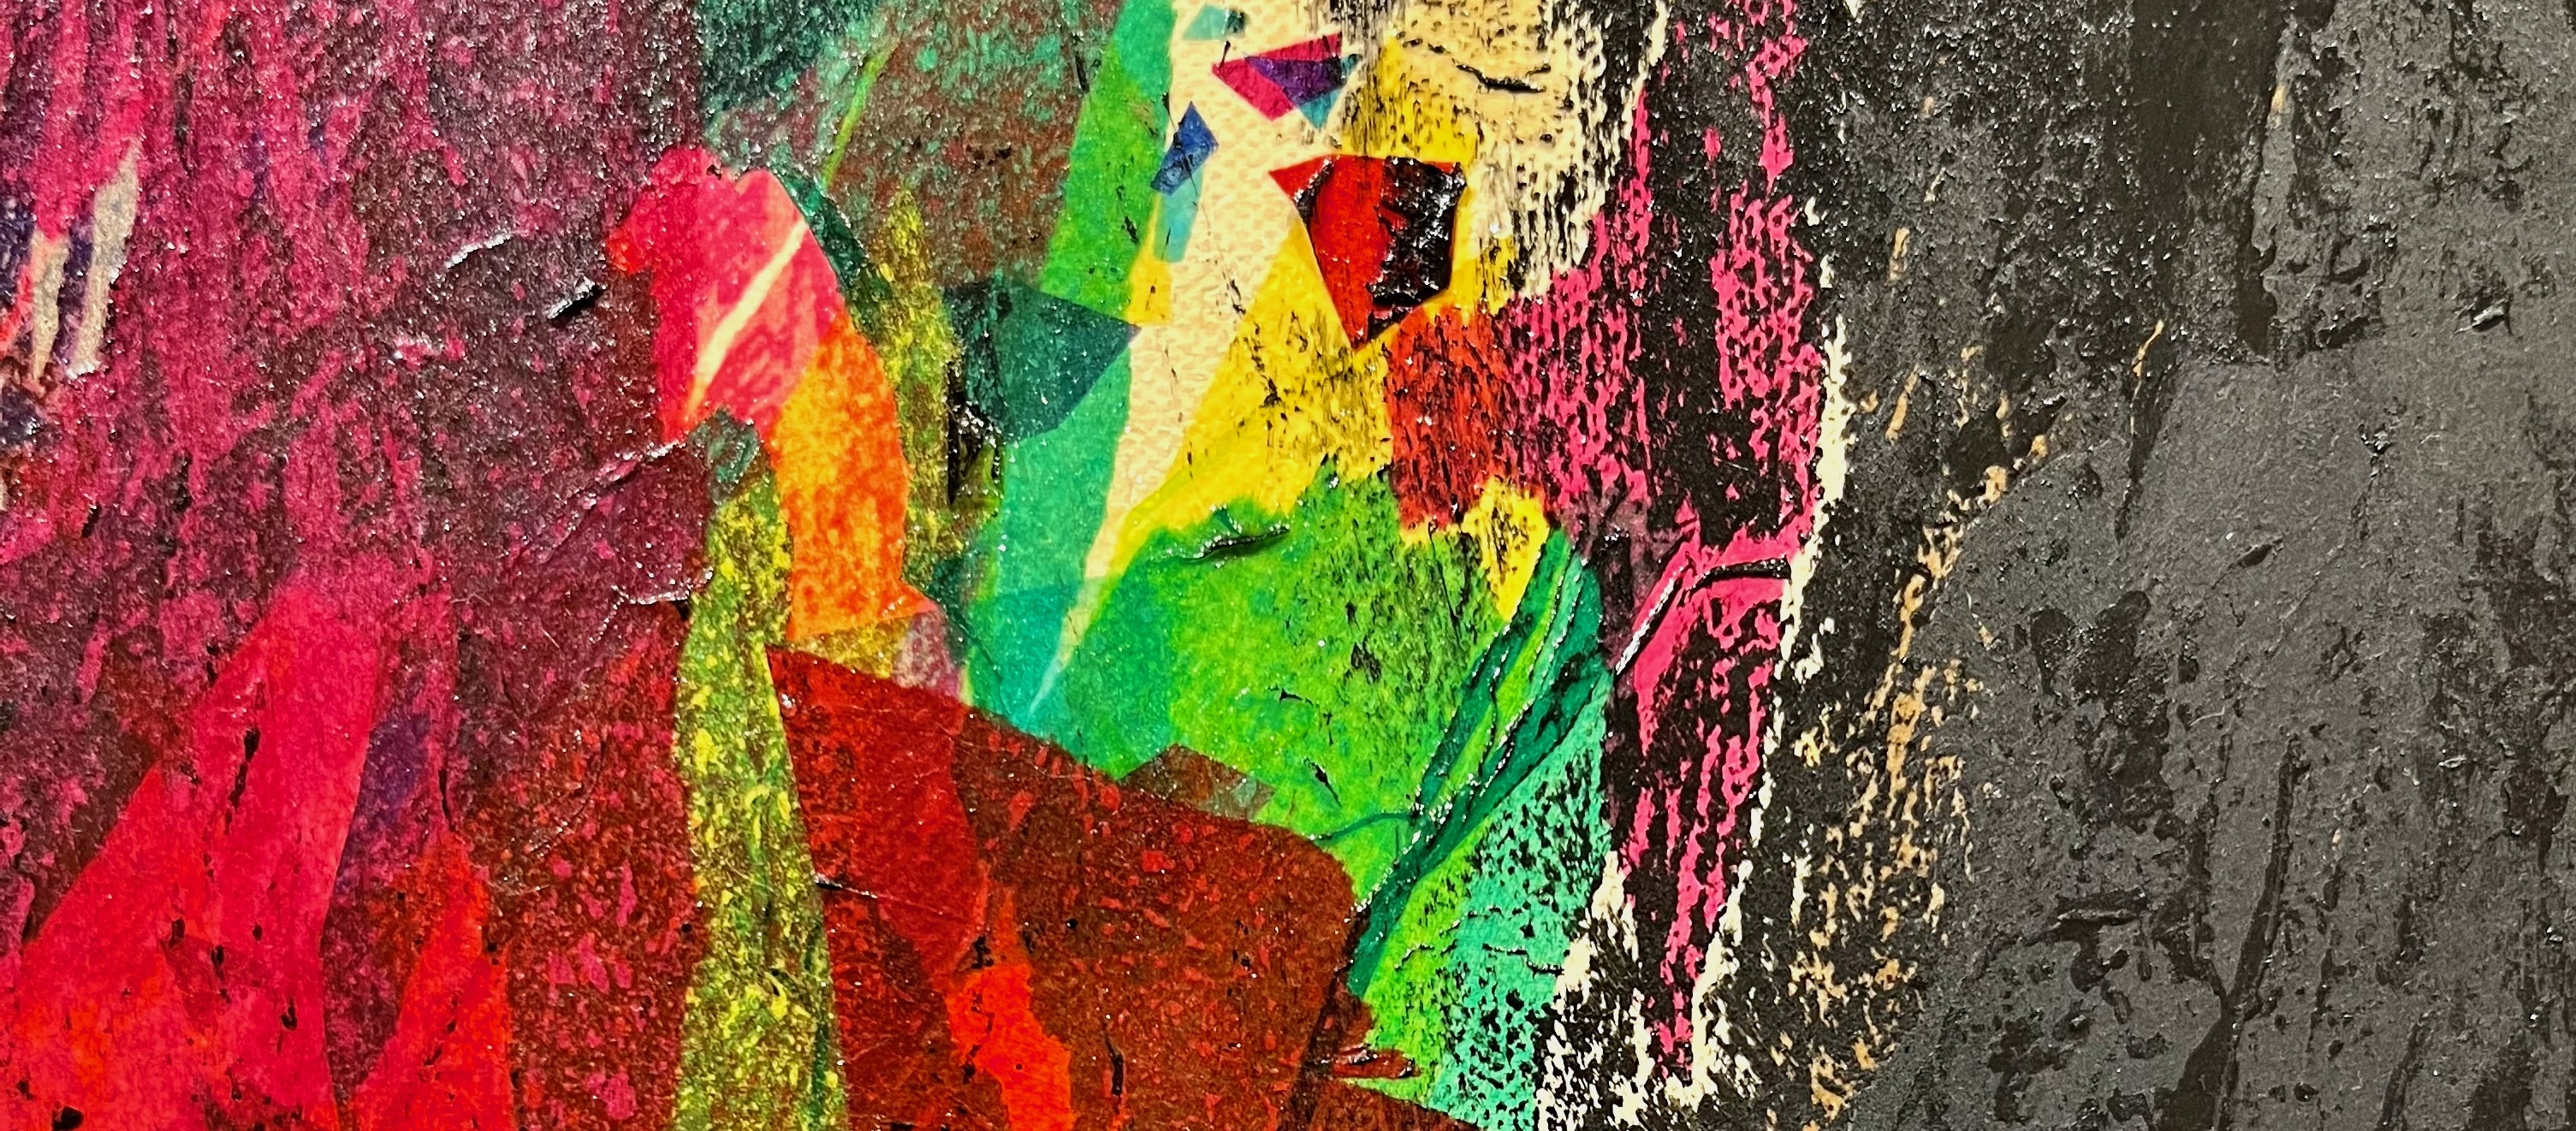 Detalj av abstrakt målning av Seyda